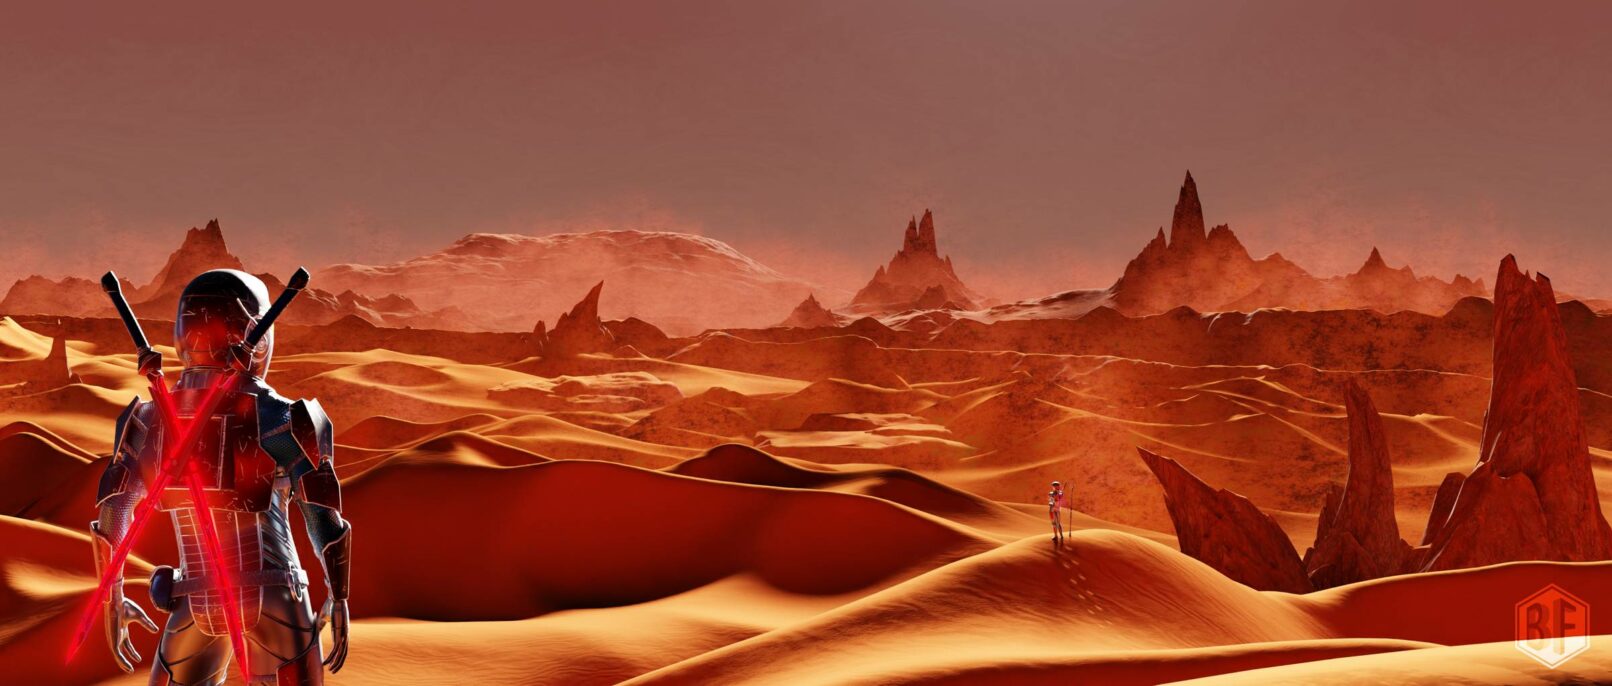 Explorateurs spatiaux dans le désert d'une planète aux paysages martiens.